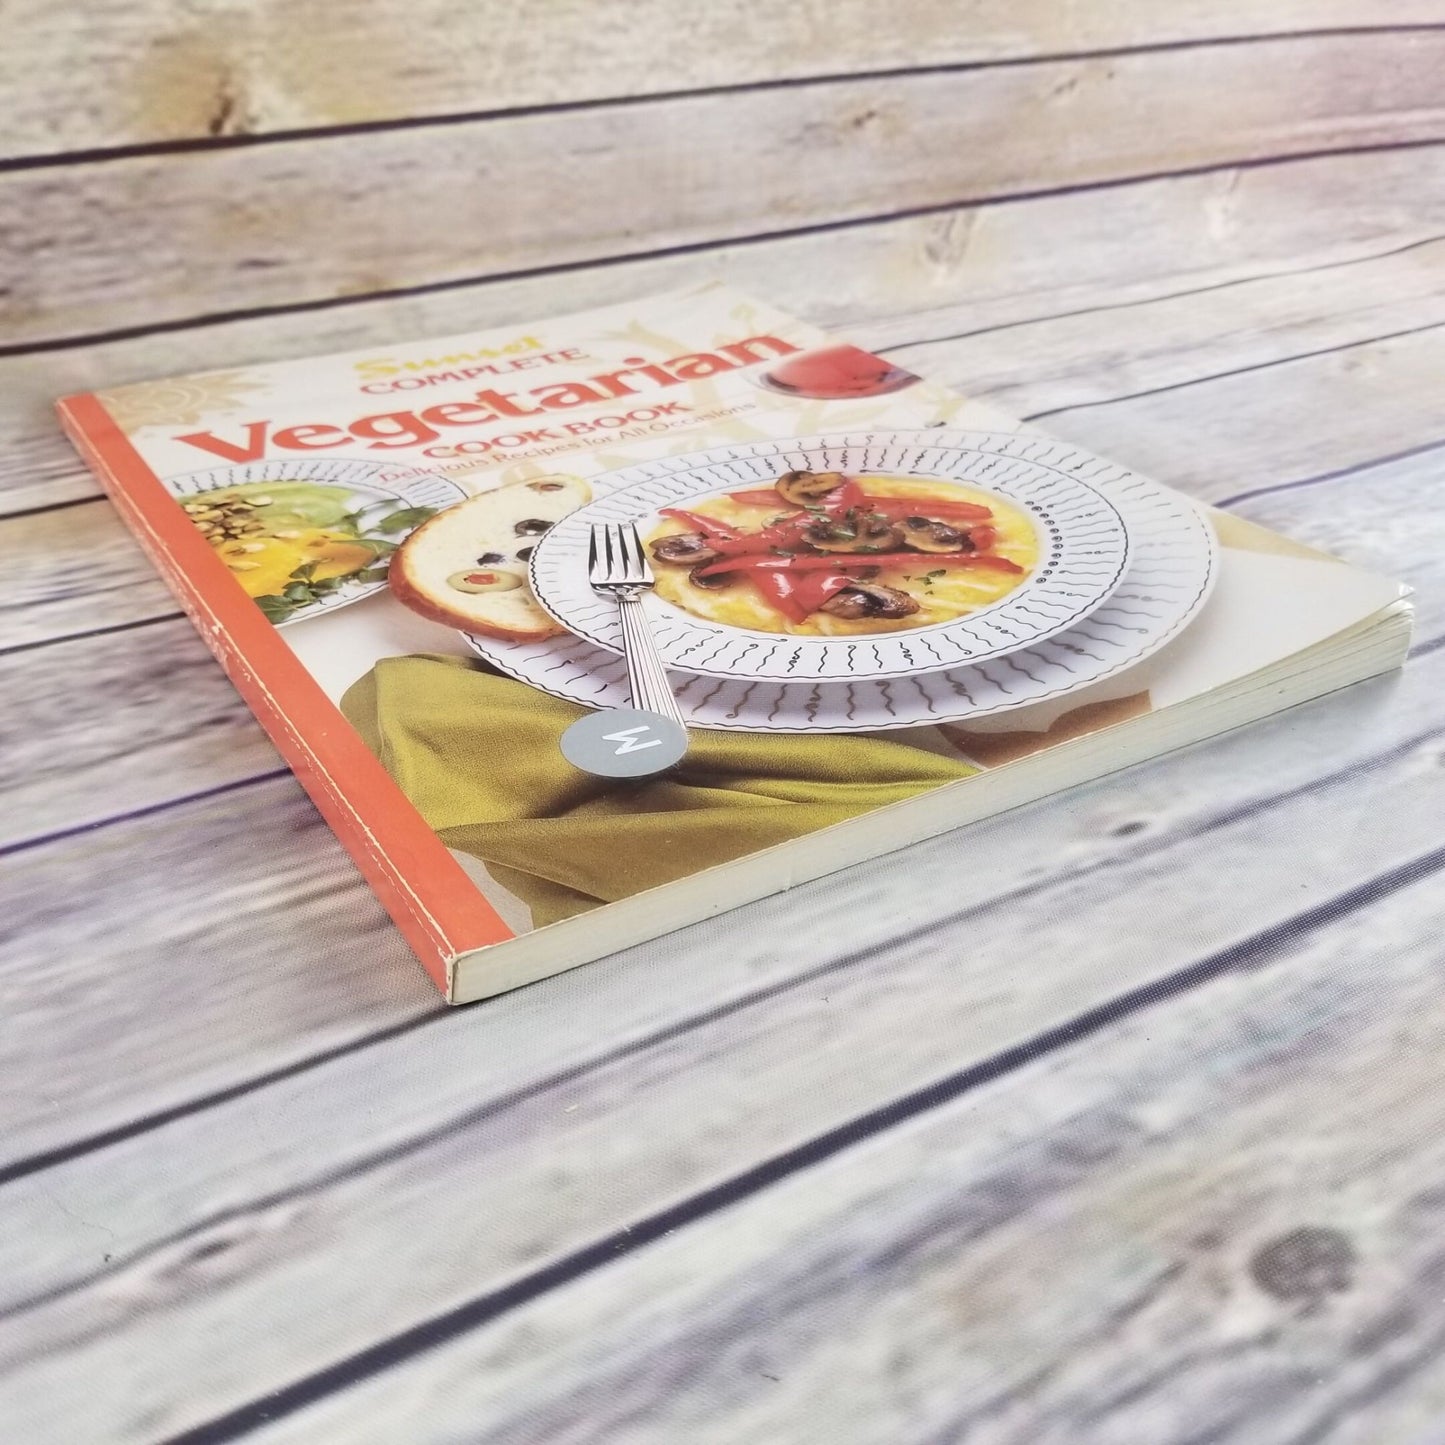 Vintage Cookbook Sunset Vegetarian Recipes Complete 1994 Paperback Book